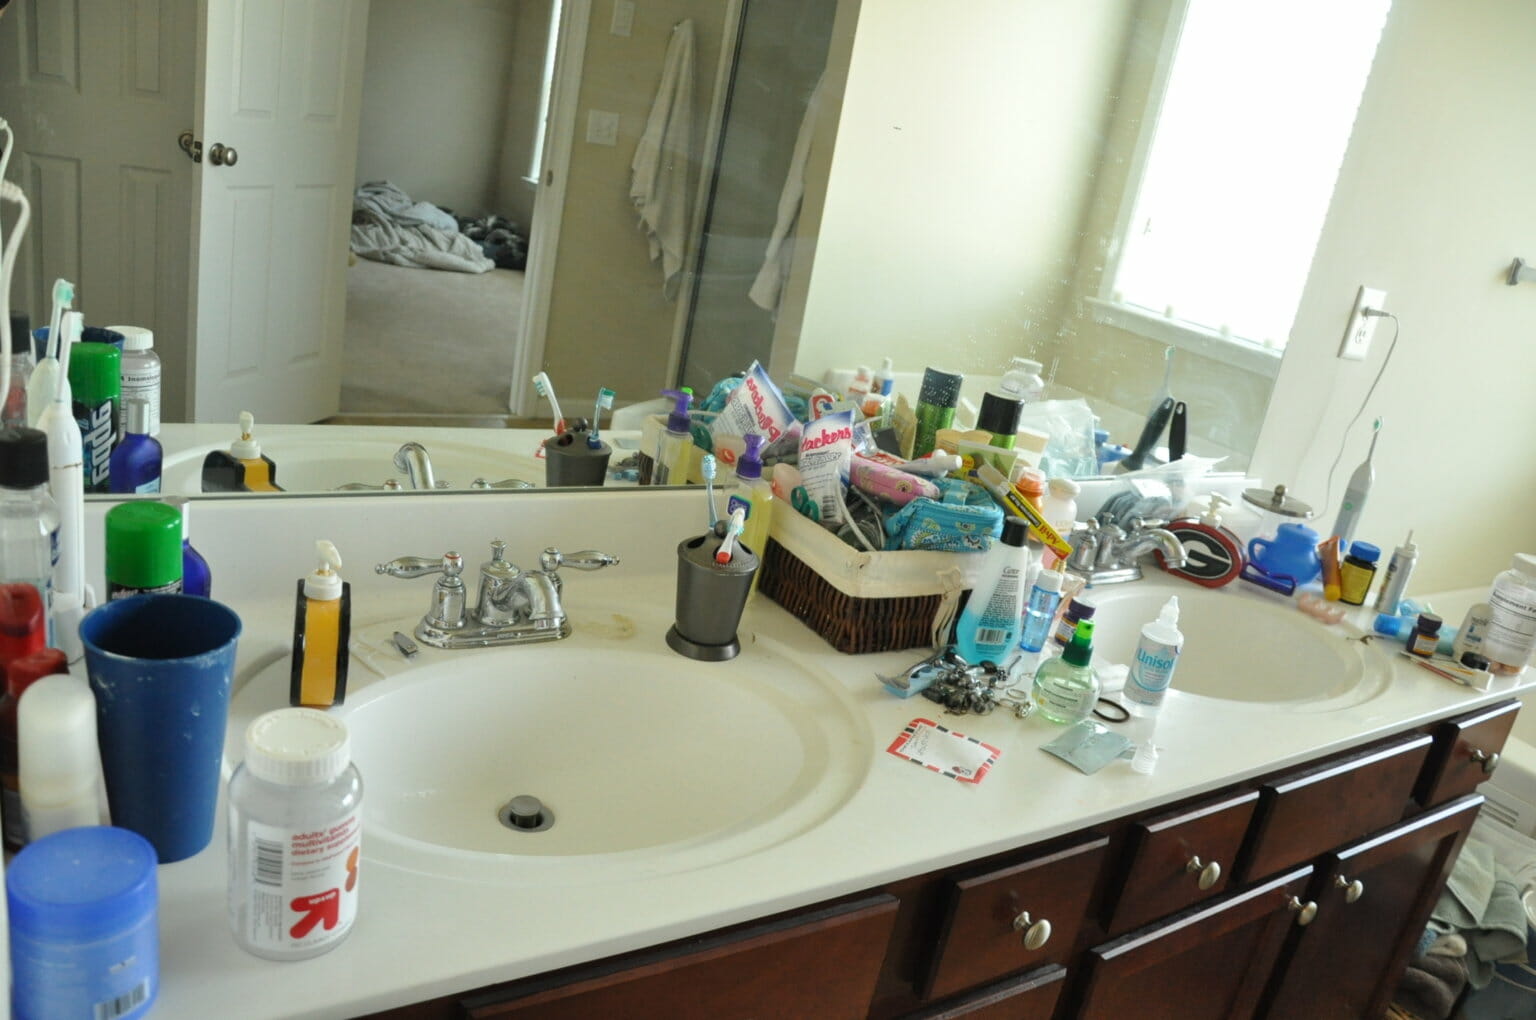 Hình ảnh phòng tắm với bồn rửa đổi hình elip, xung quanh bệ cất trữ vật dụng cá nhân khá gọn gàng